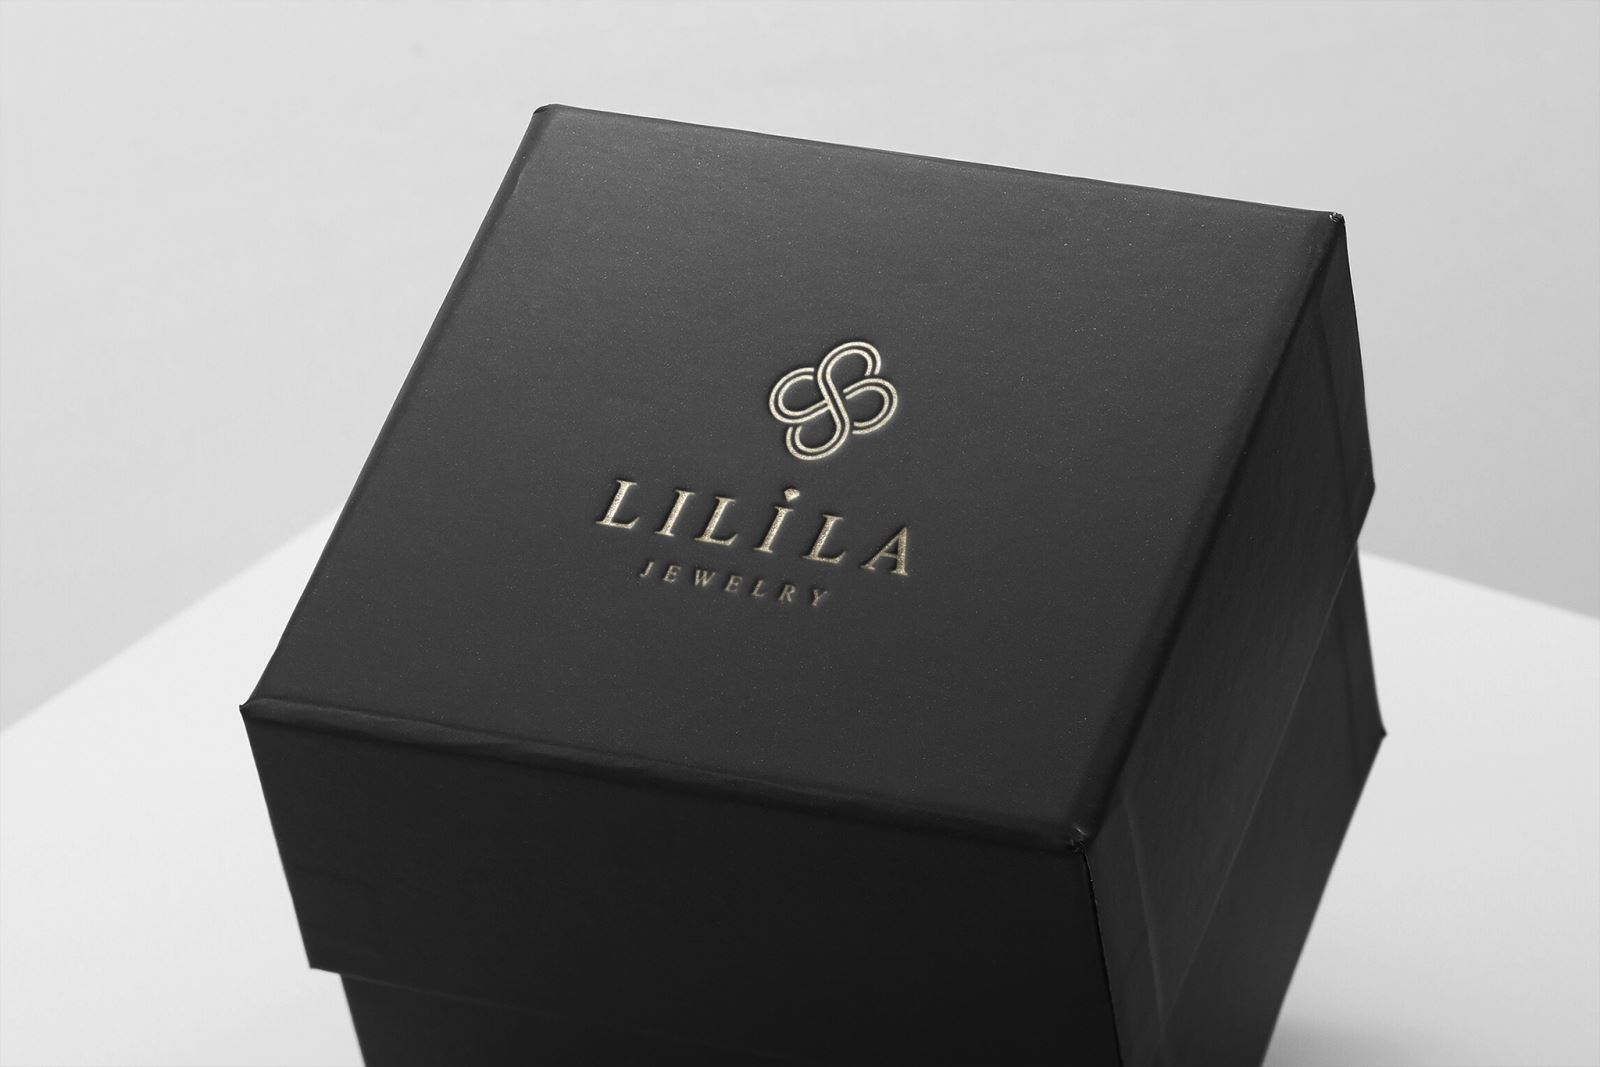 Thiết kế logo thương hiệu trang sức phái đẹp Lilila Jewelry